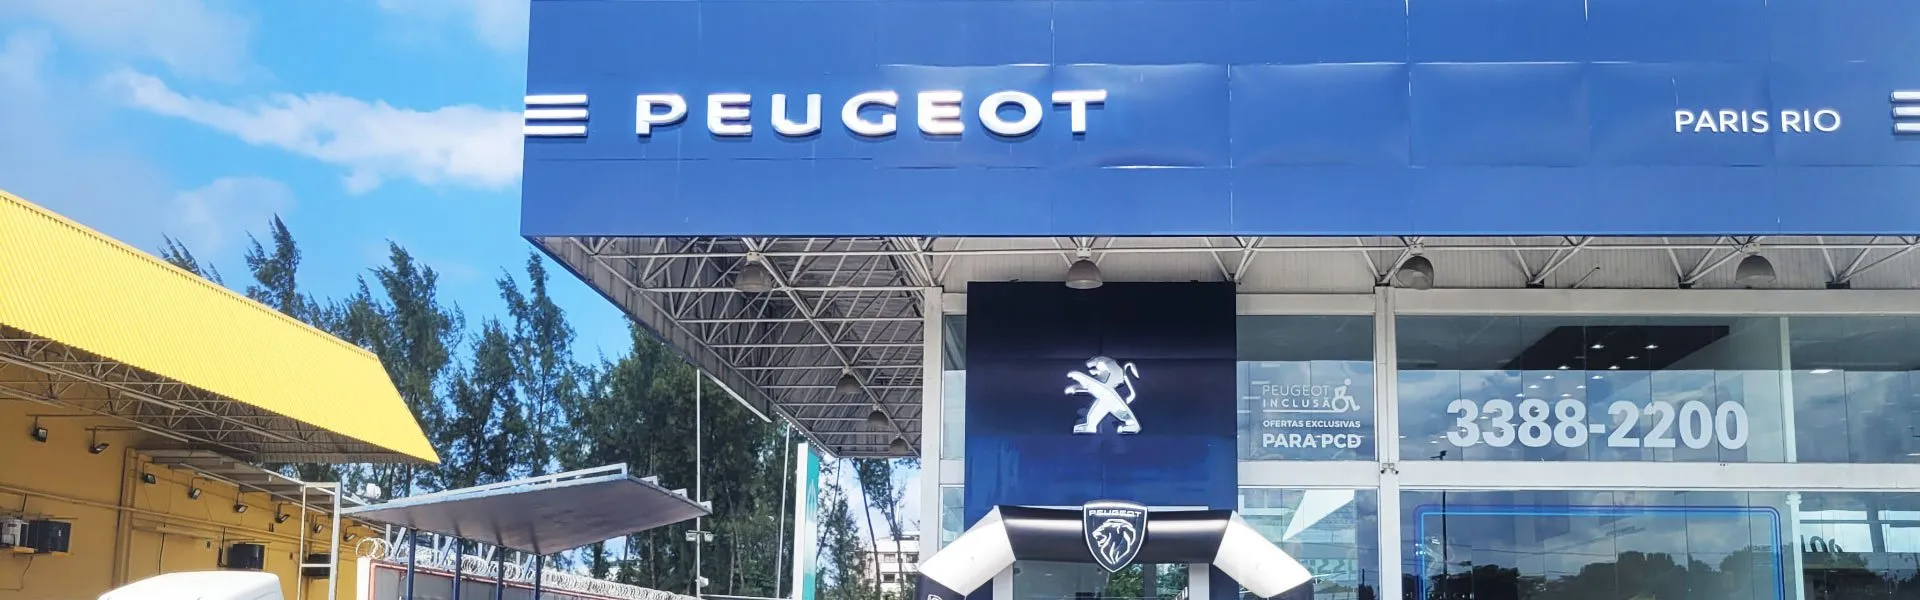 Modelo Peugeot